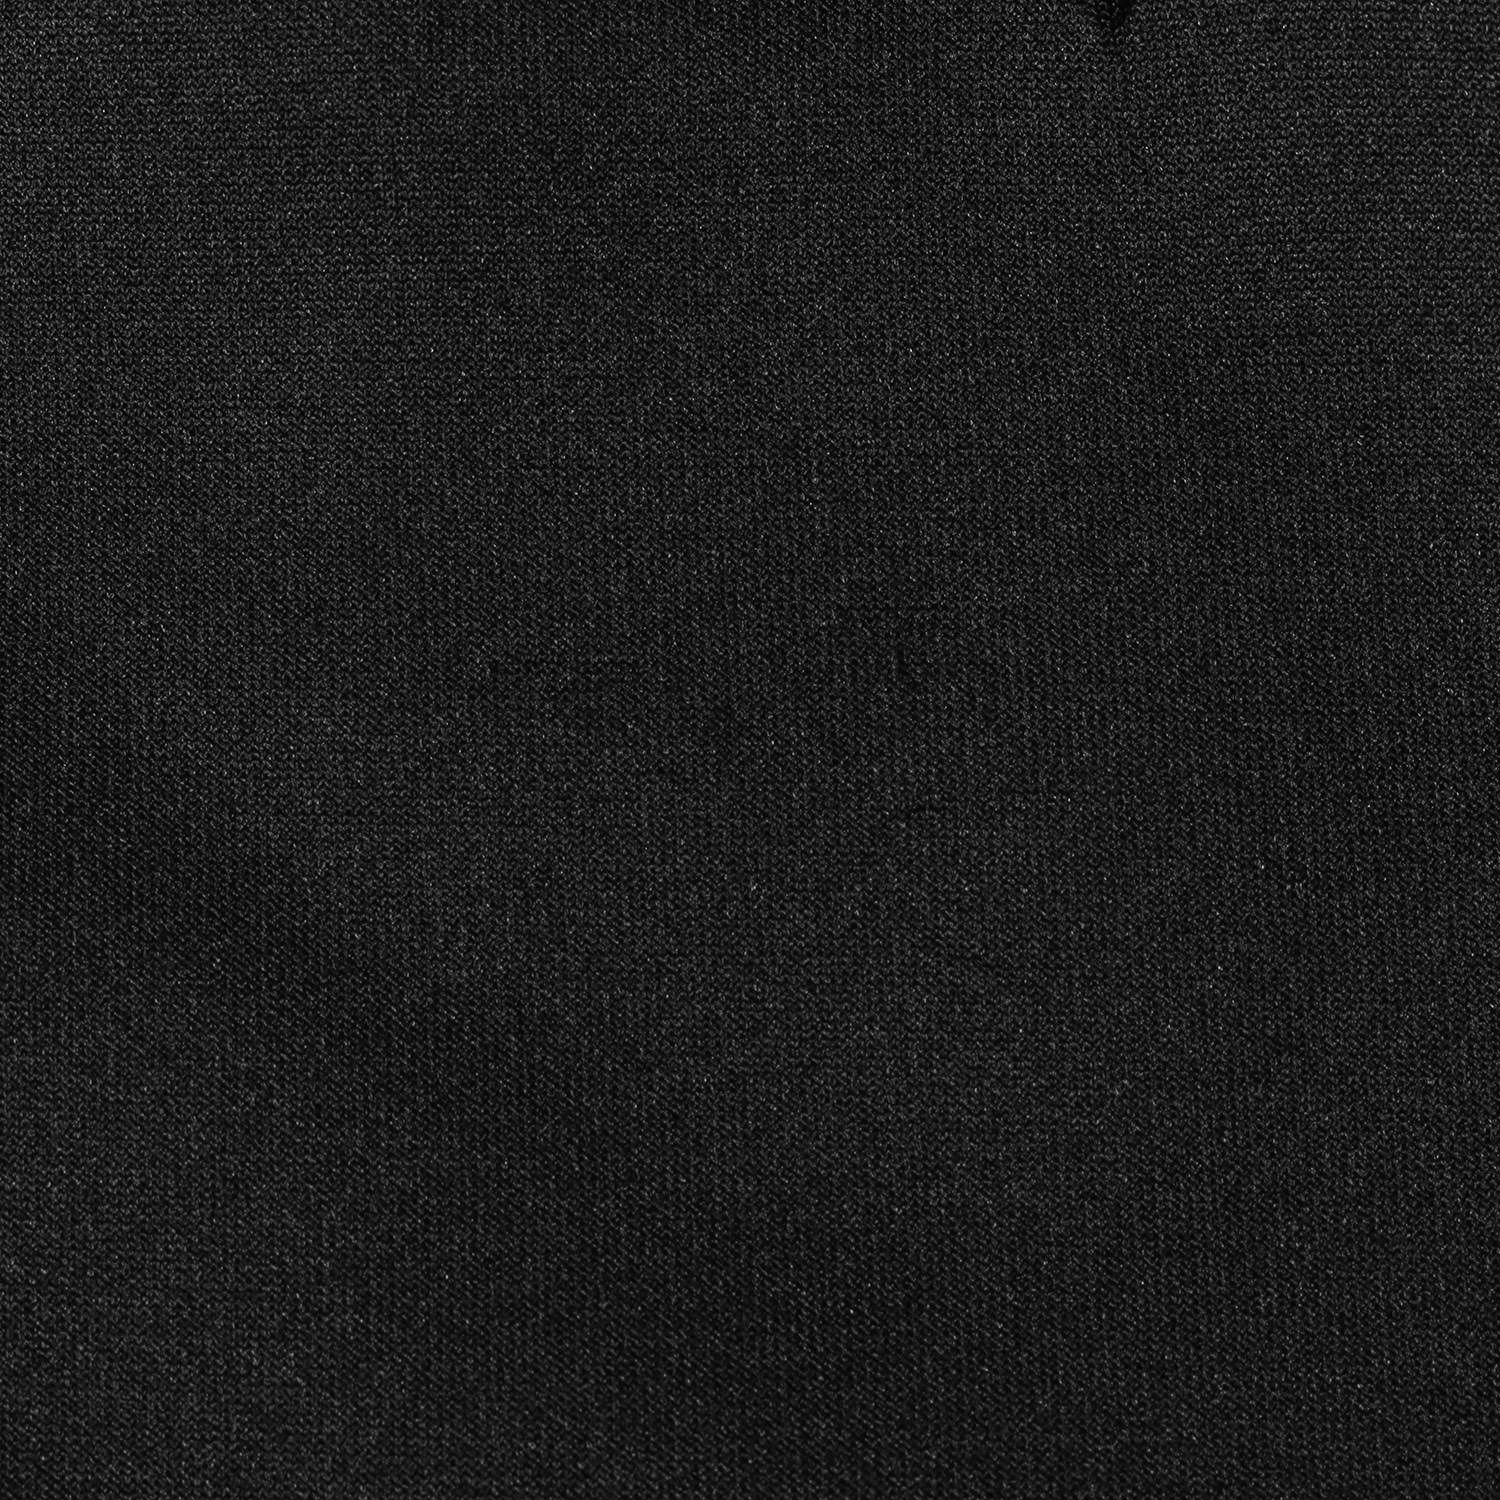 DOLCE&GABBANA ドルチェ&ガッバーナ パンツ サイズ:48 ロゴ スター エンボス ストレッチ ジャージー トラックパンツ GYI4AT HUMD6 近年モデル #DGMILLENNIALS ブラック 黒 イタリア製 ボトムス ズボン 【メンズ】